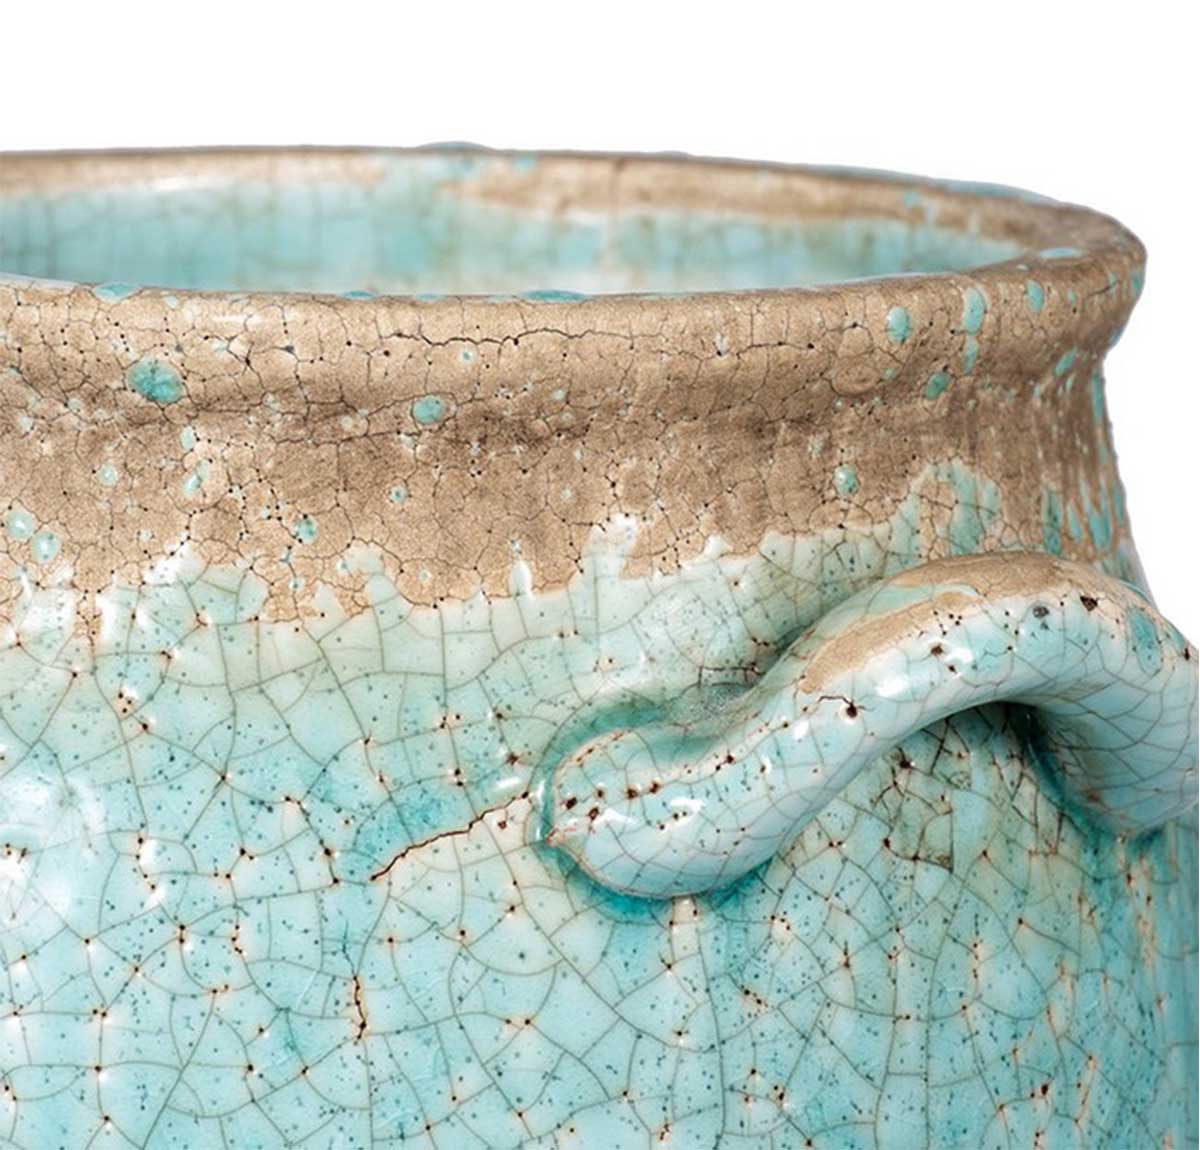 The Candia Ceramic Vase Medium - Turquoise